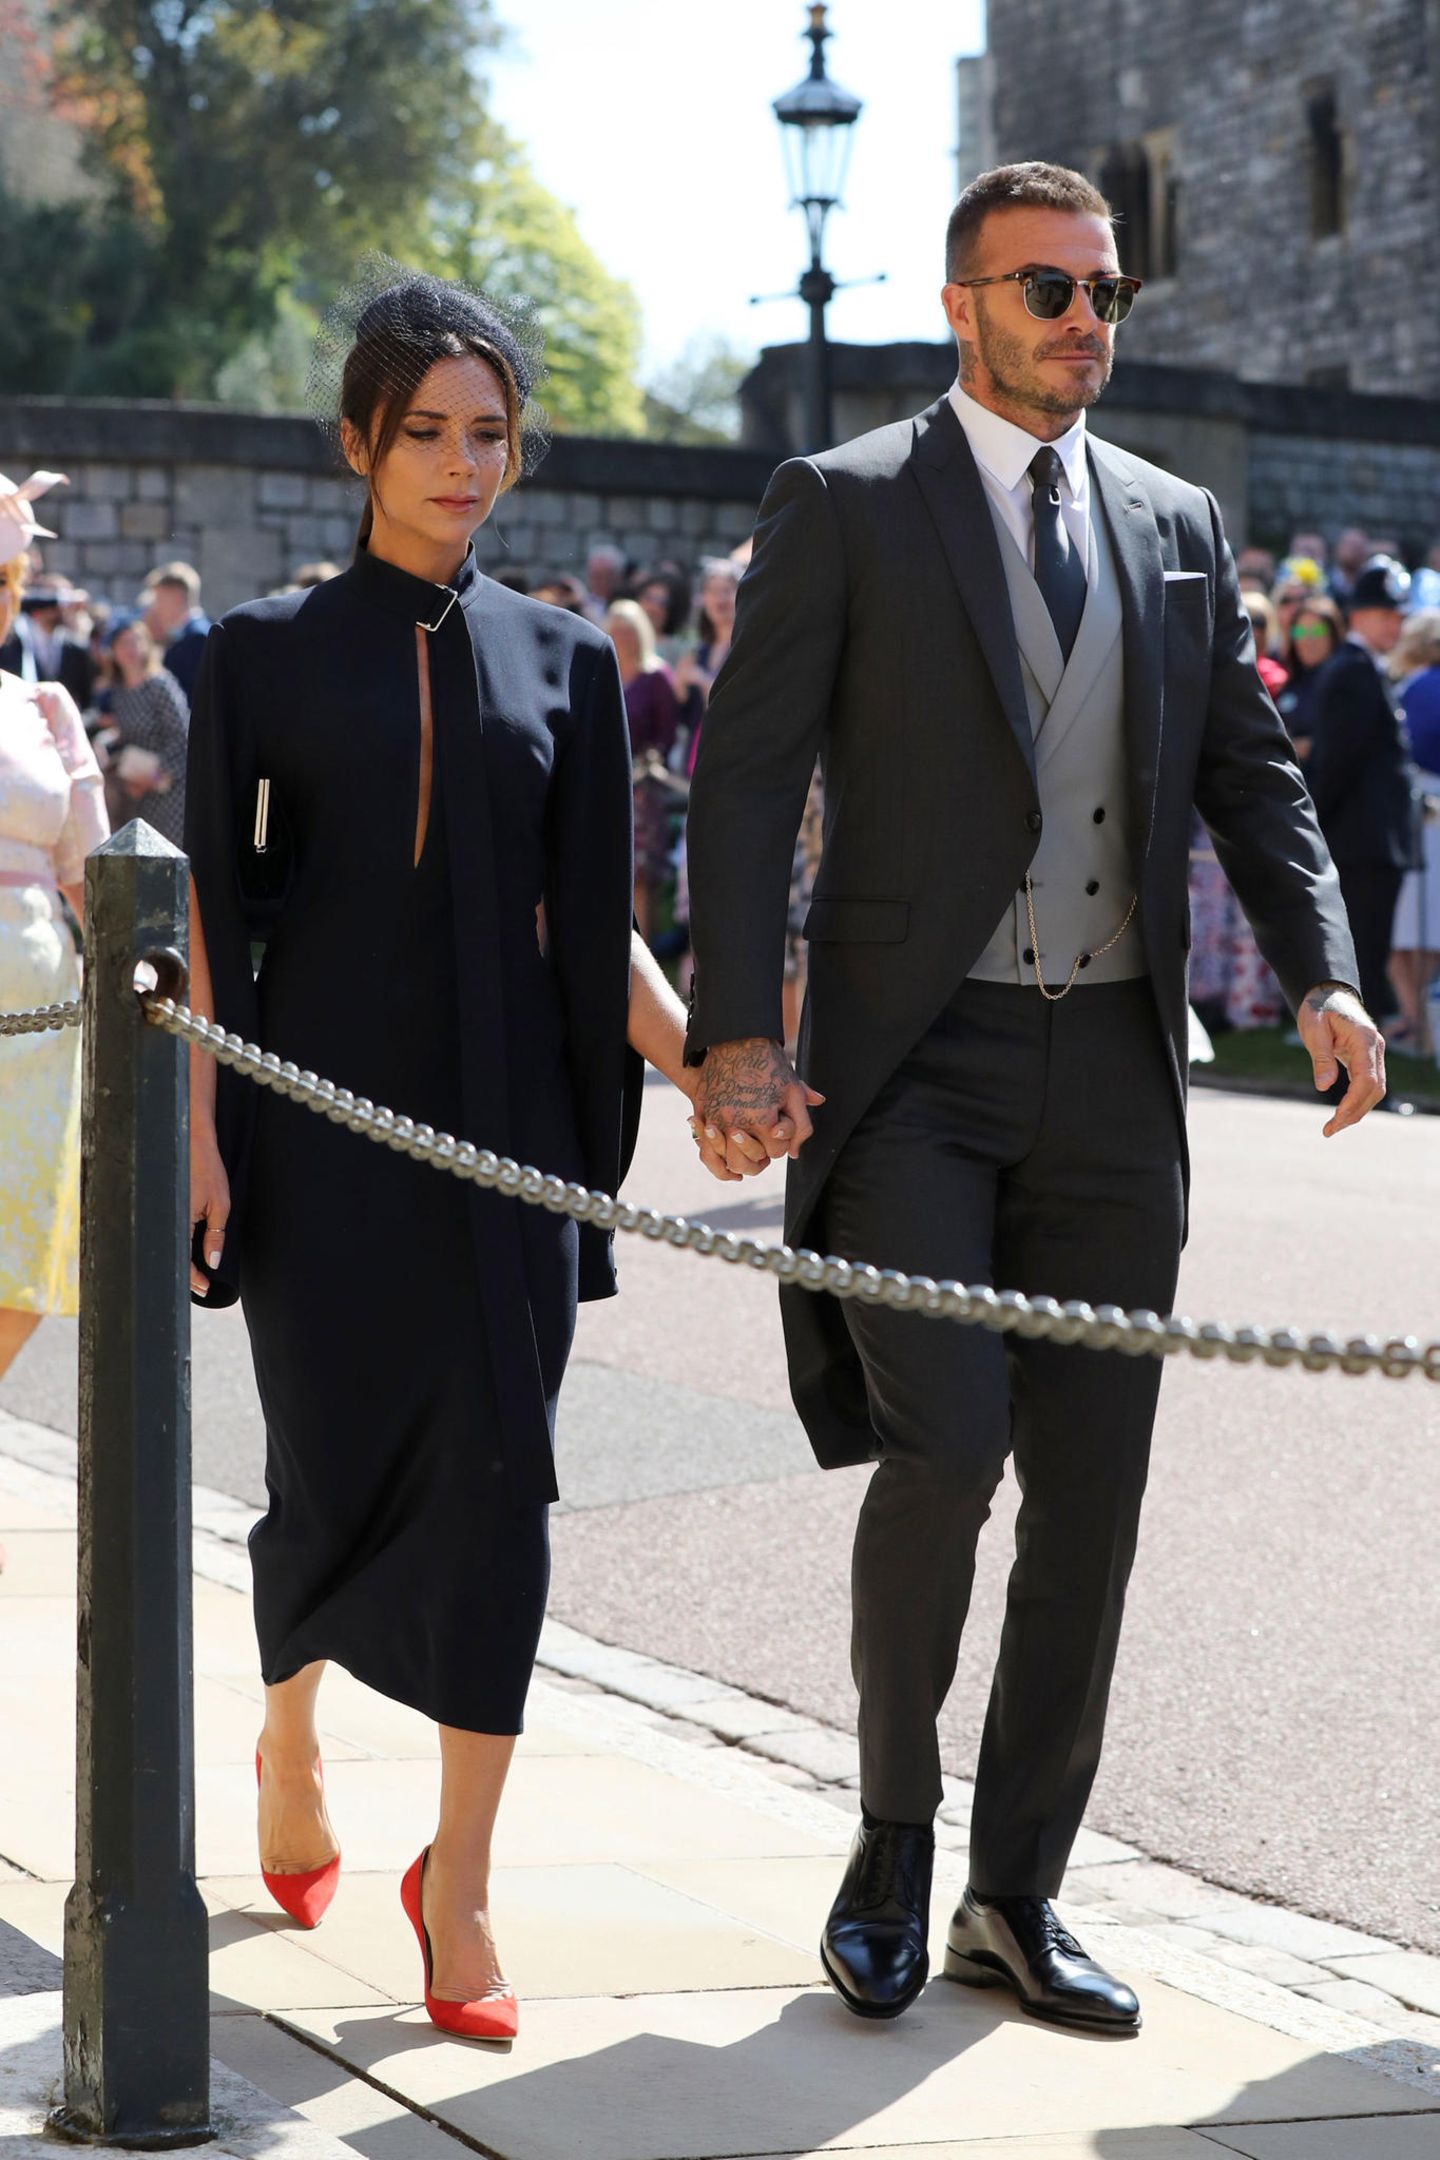 Wie schon 2011 bei der Hochzeit von William und Kate, so sind David und Victoria Beckham auch diesmal wieder unter den Gästen.